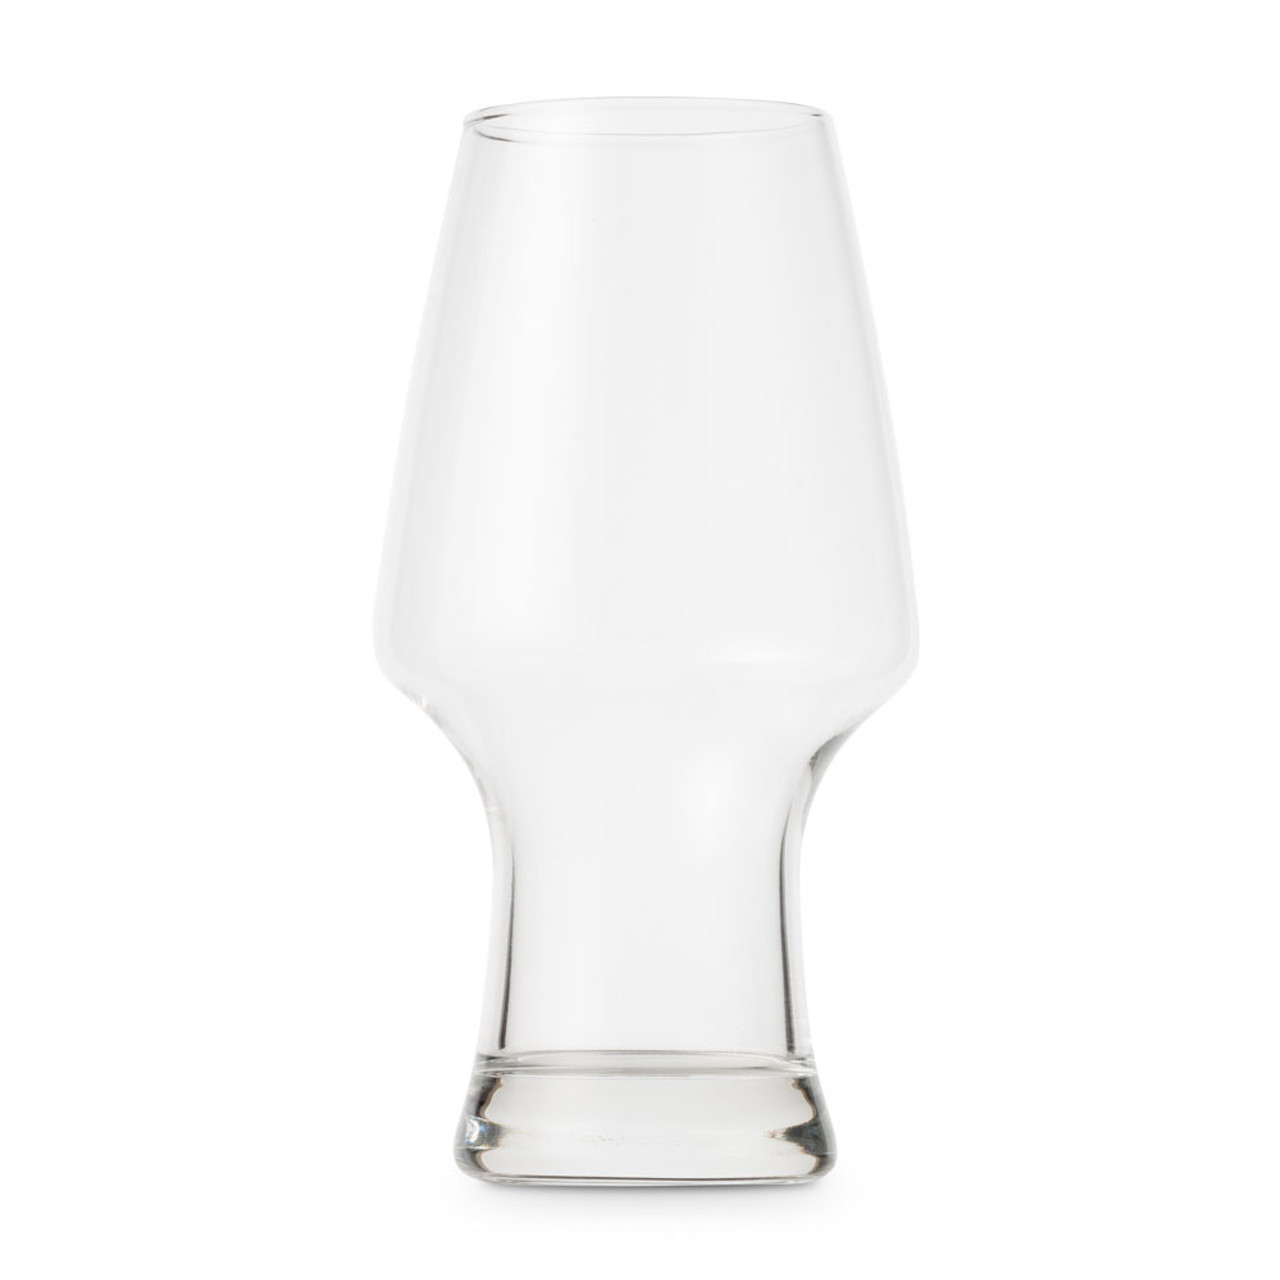 Edel Wine Cocktail & Beer Stemmed Glasses - 11.75 oz - Set of 6